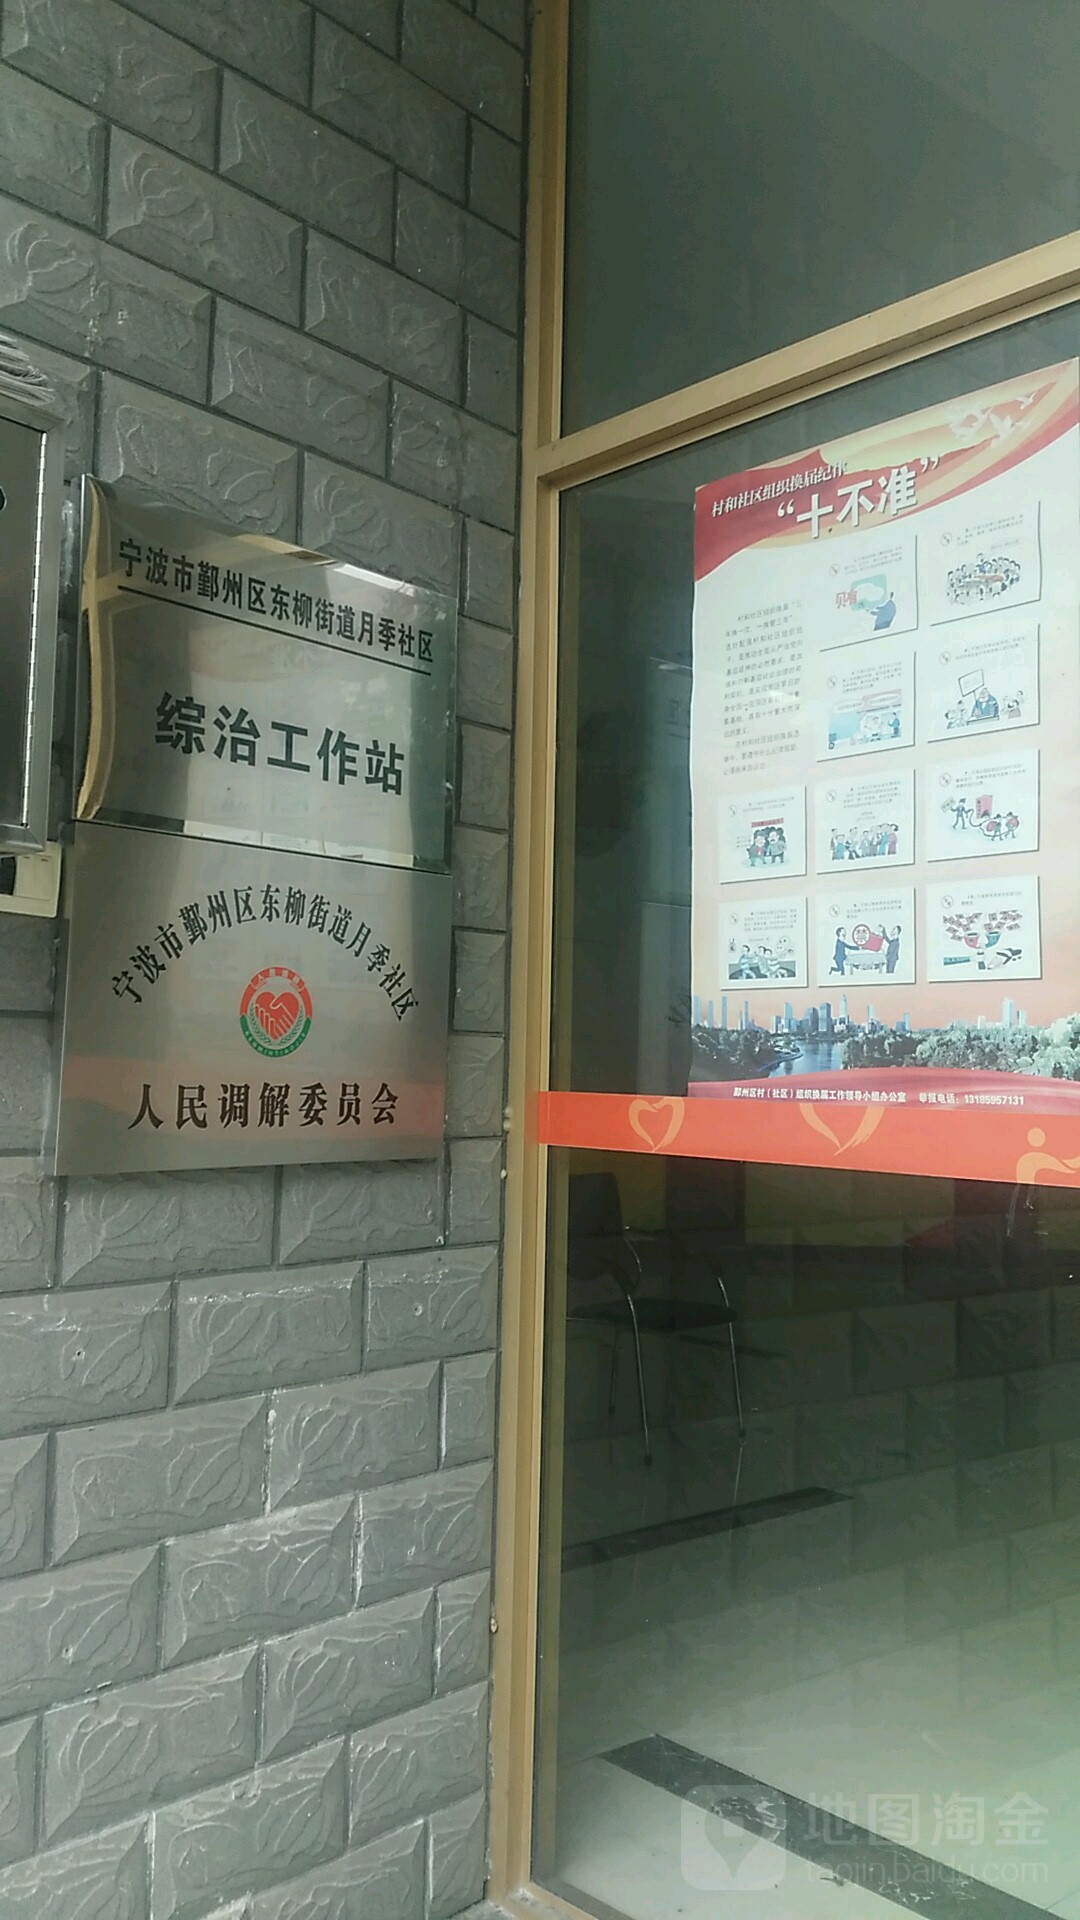 中國共產黨鄞州區東柳街道月季社區委員會